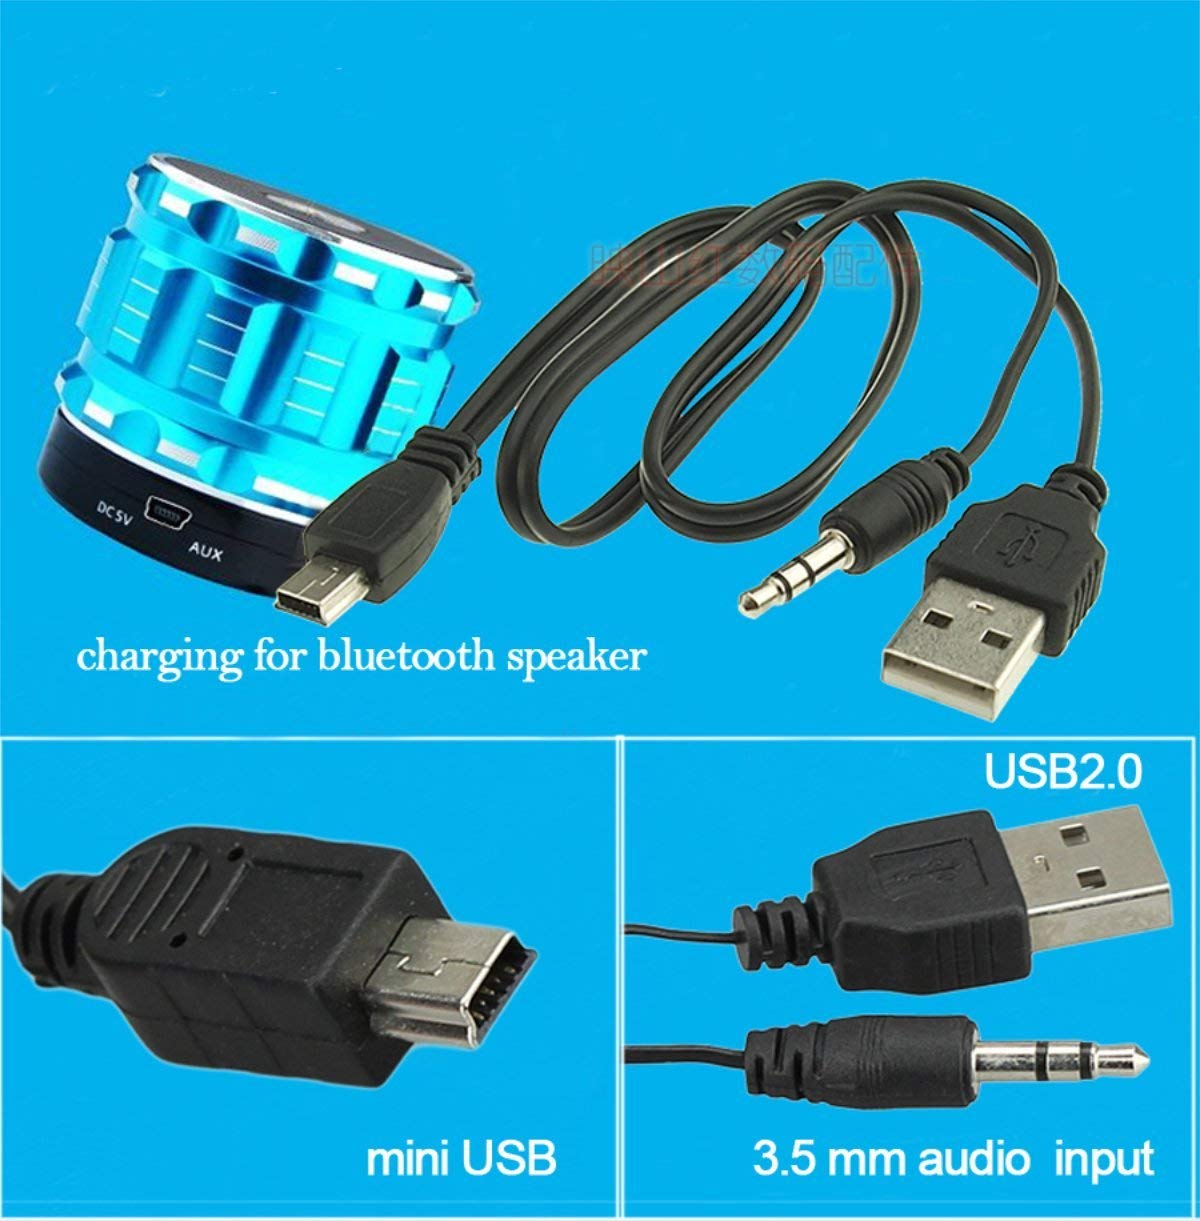 USB AUX MINI USB%20(5).jpg? =0